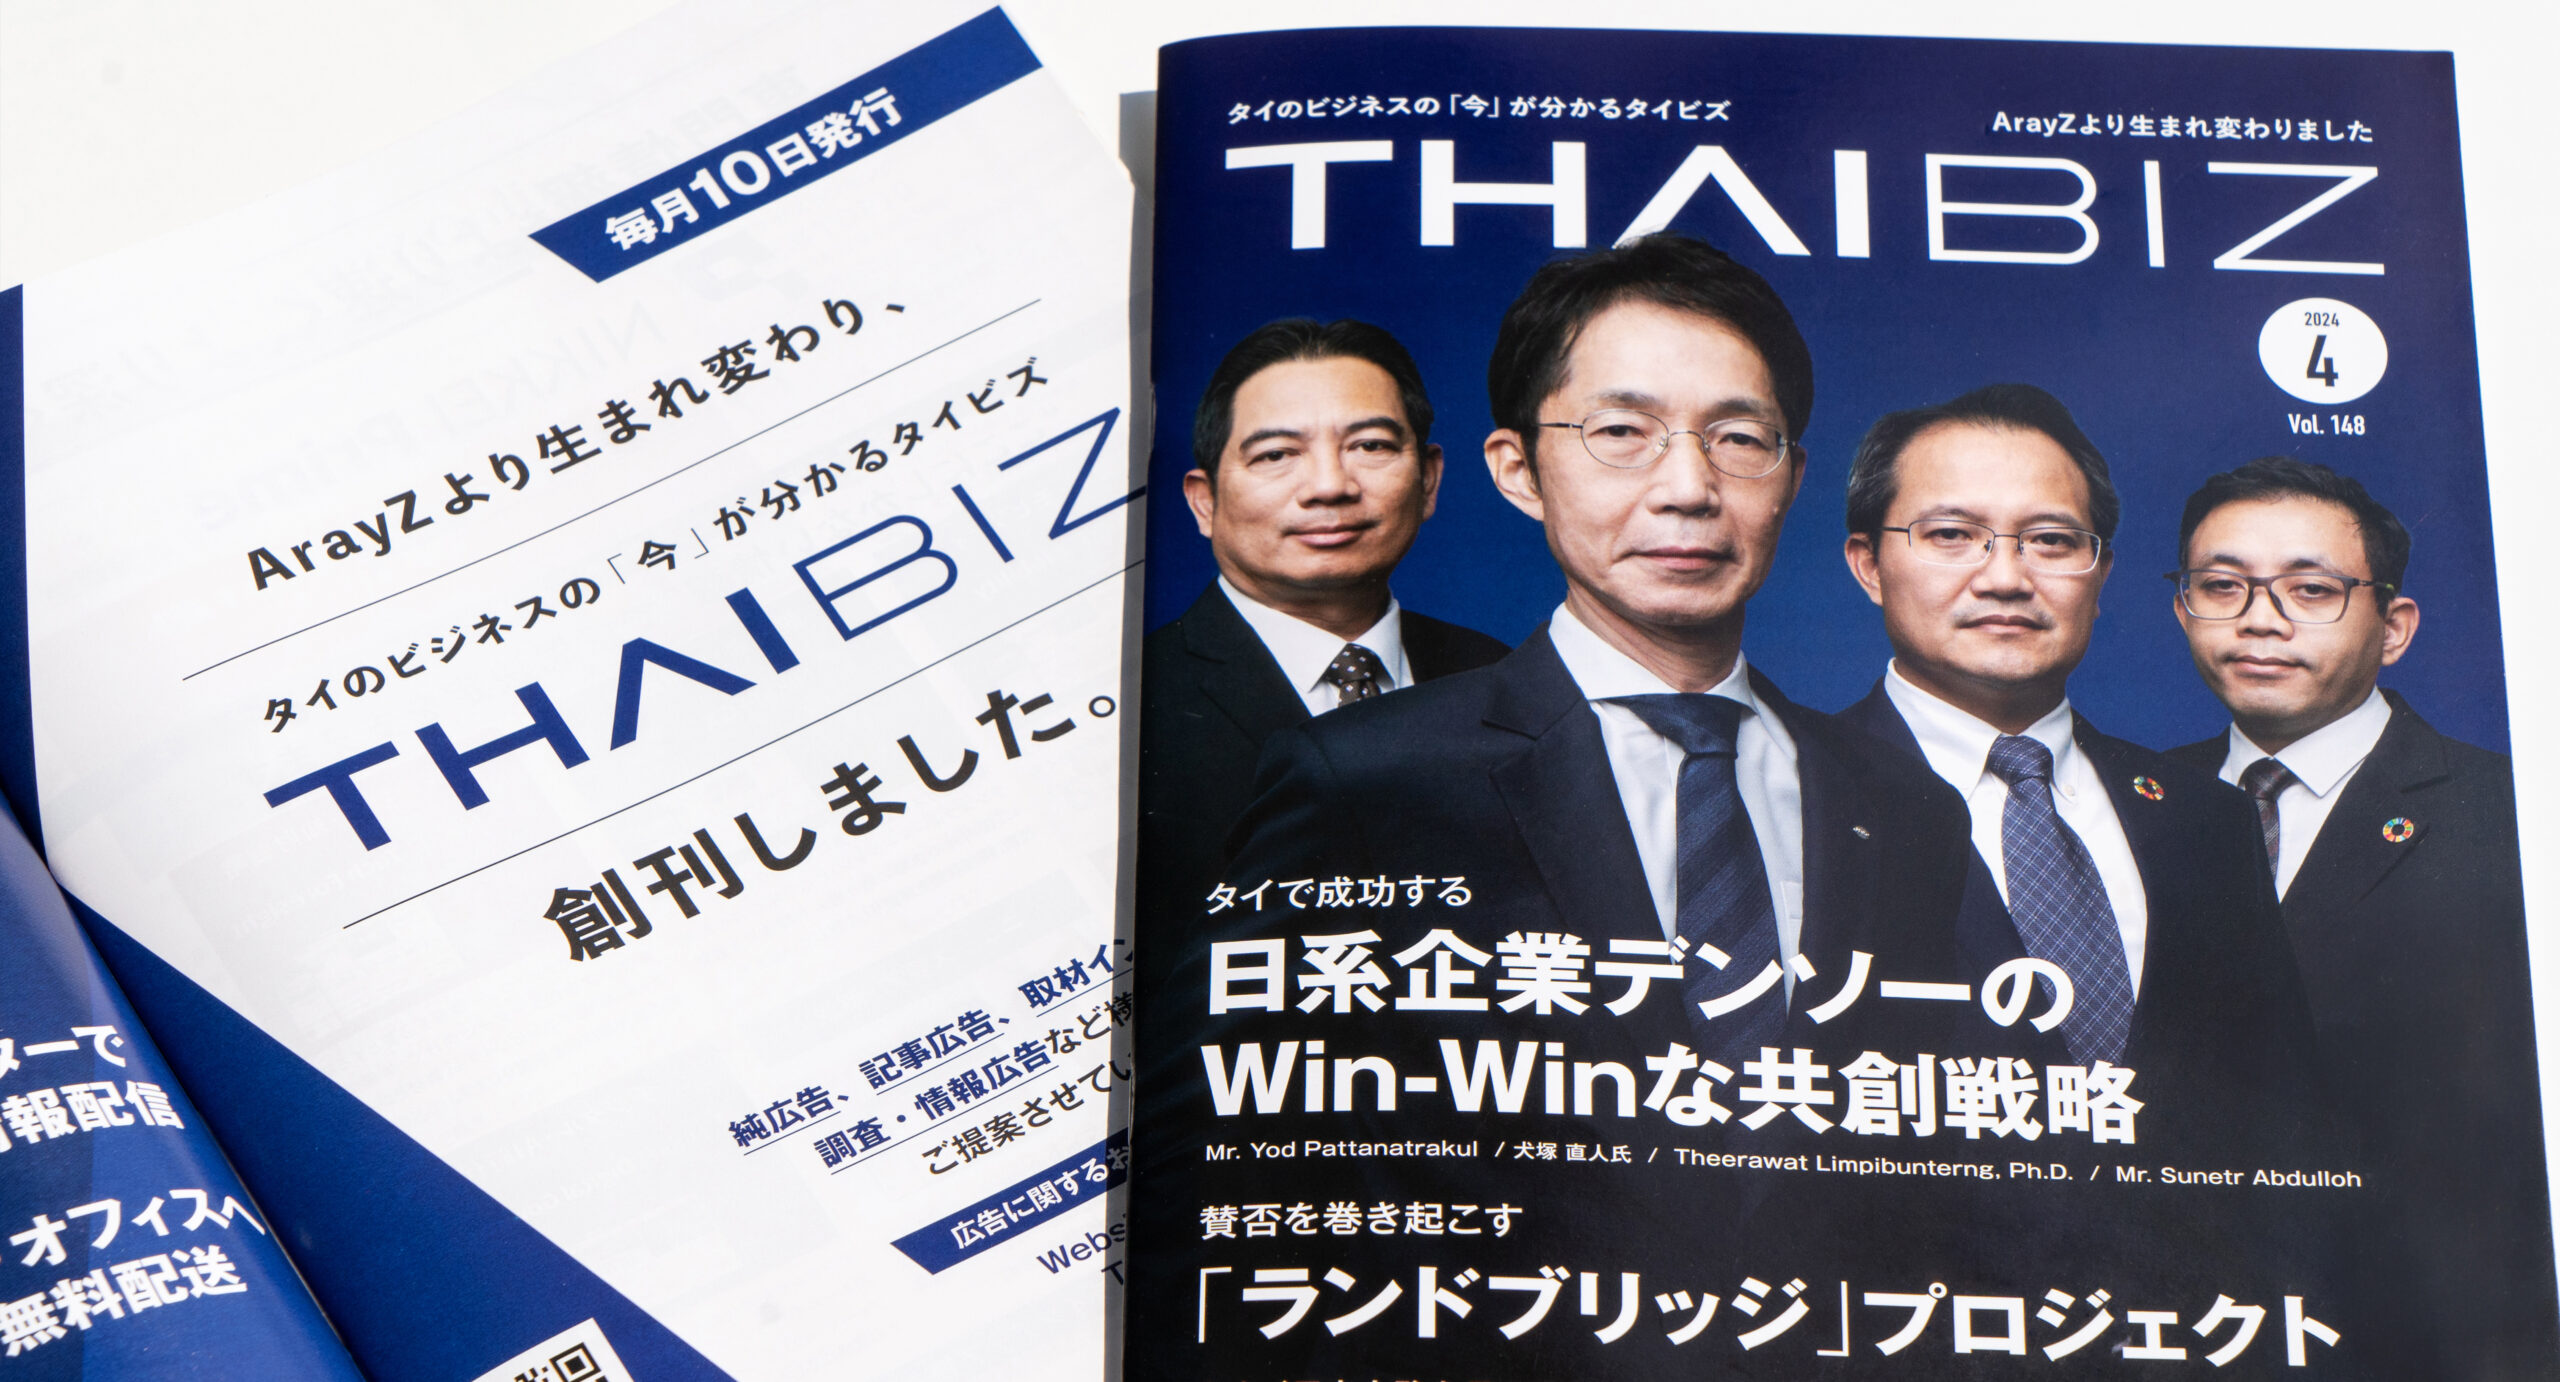 สื่อธุรกิจภาษาญี่ปุ่น TJRI และ ArayZ ควบรวมภายใต้ชื่อใหม่ “THAIBIZ” เปิดตัวฉบับแรกเดือนเมษายนのバナー